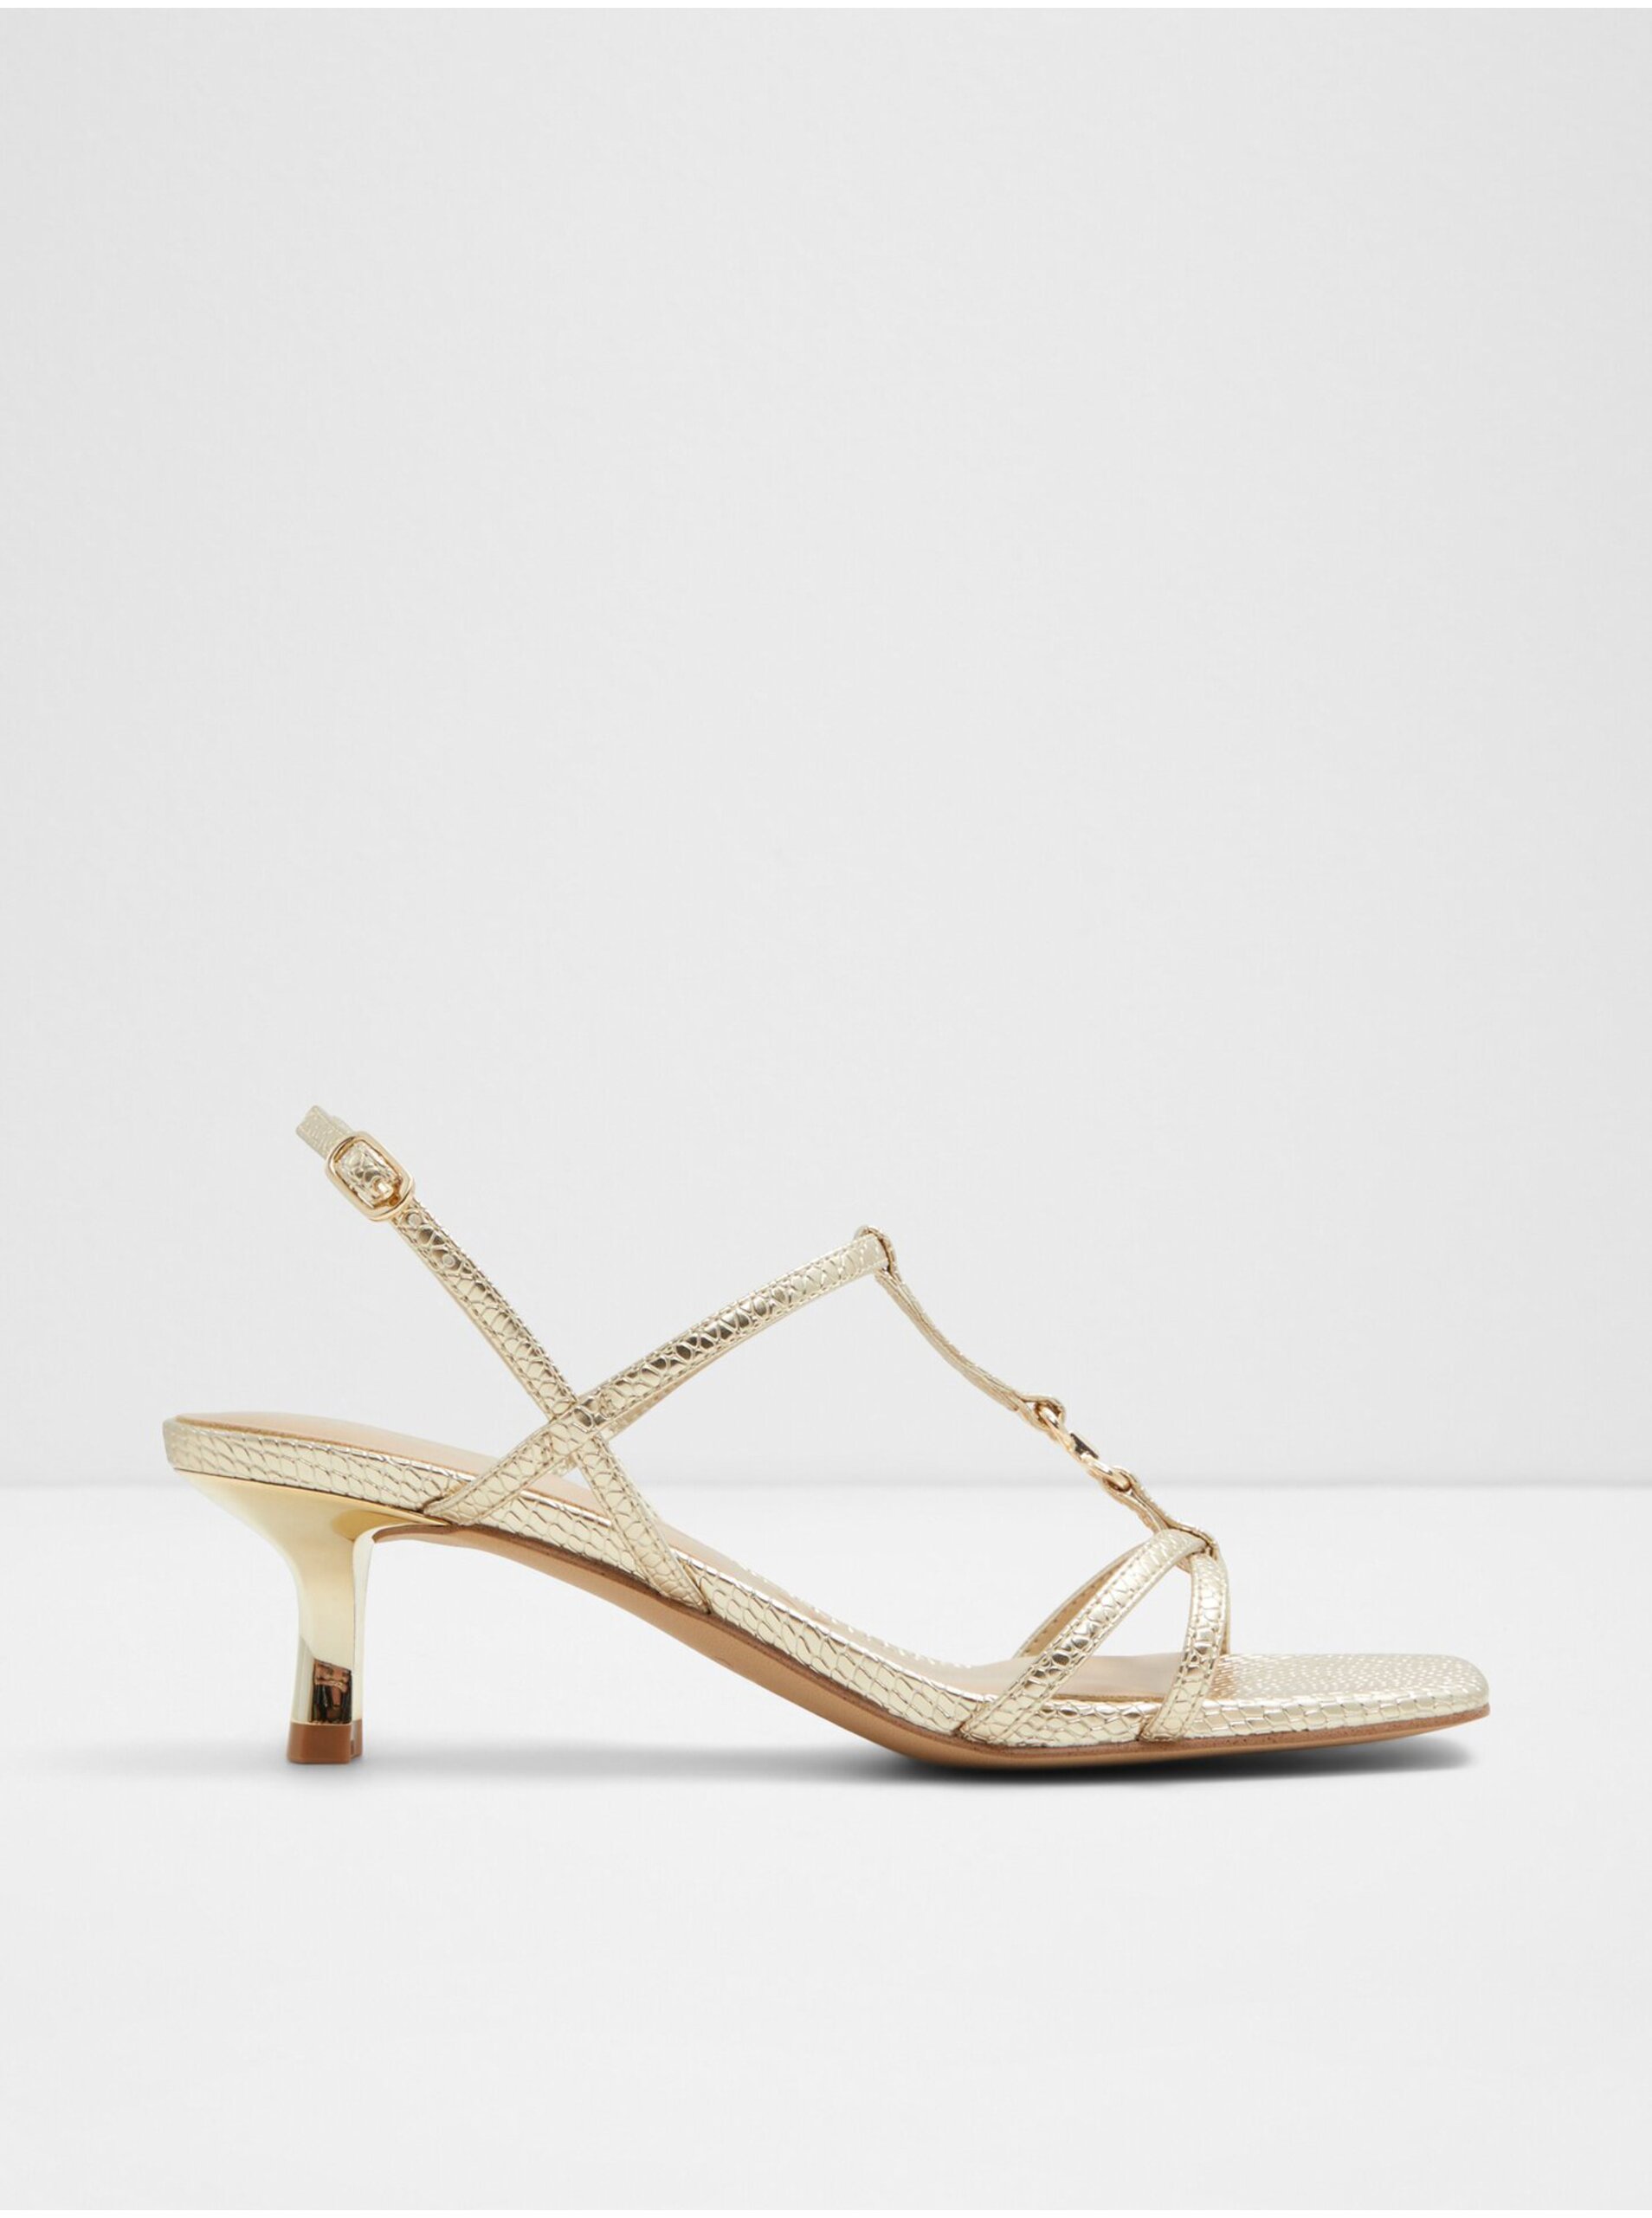 E-shop Dámské sandály na podpatku ve zlaté barvě ALDO Josefina